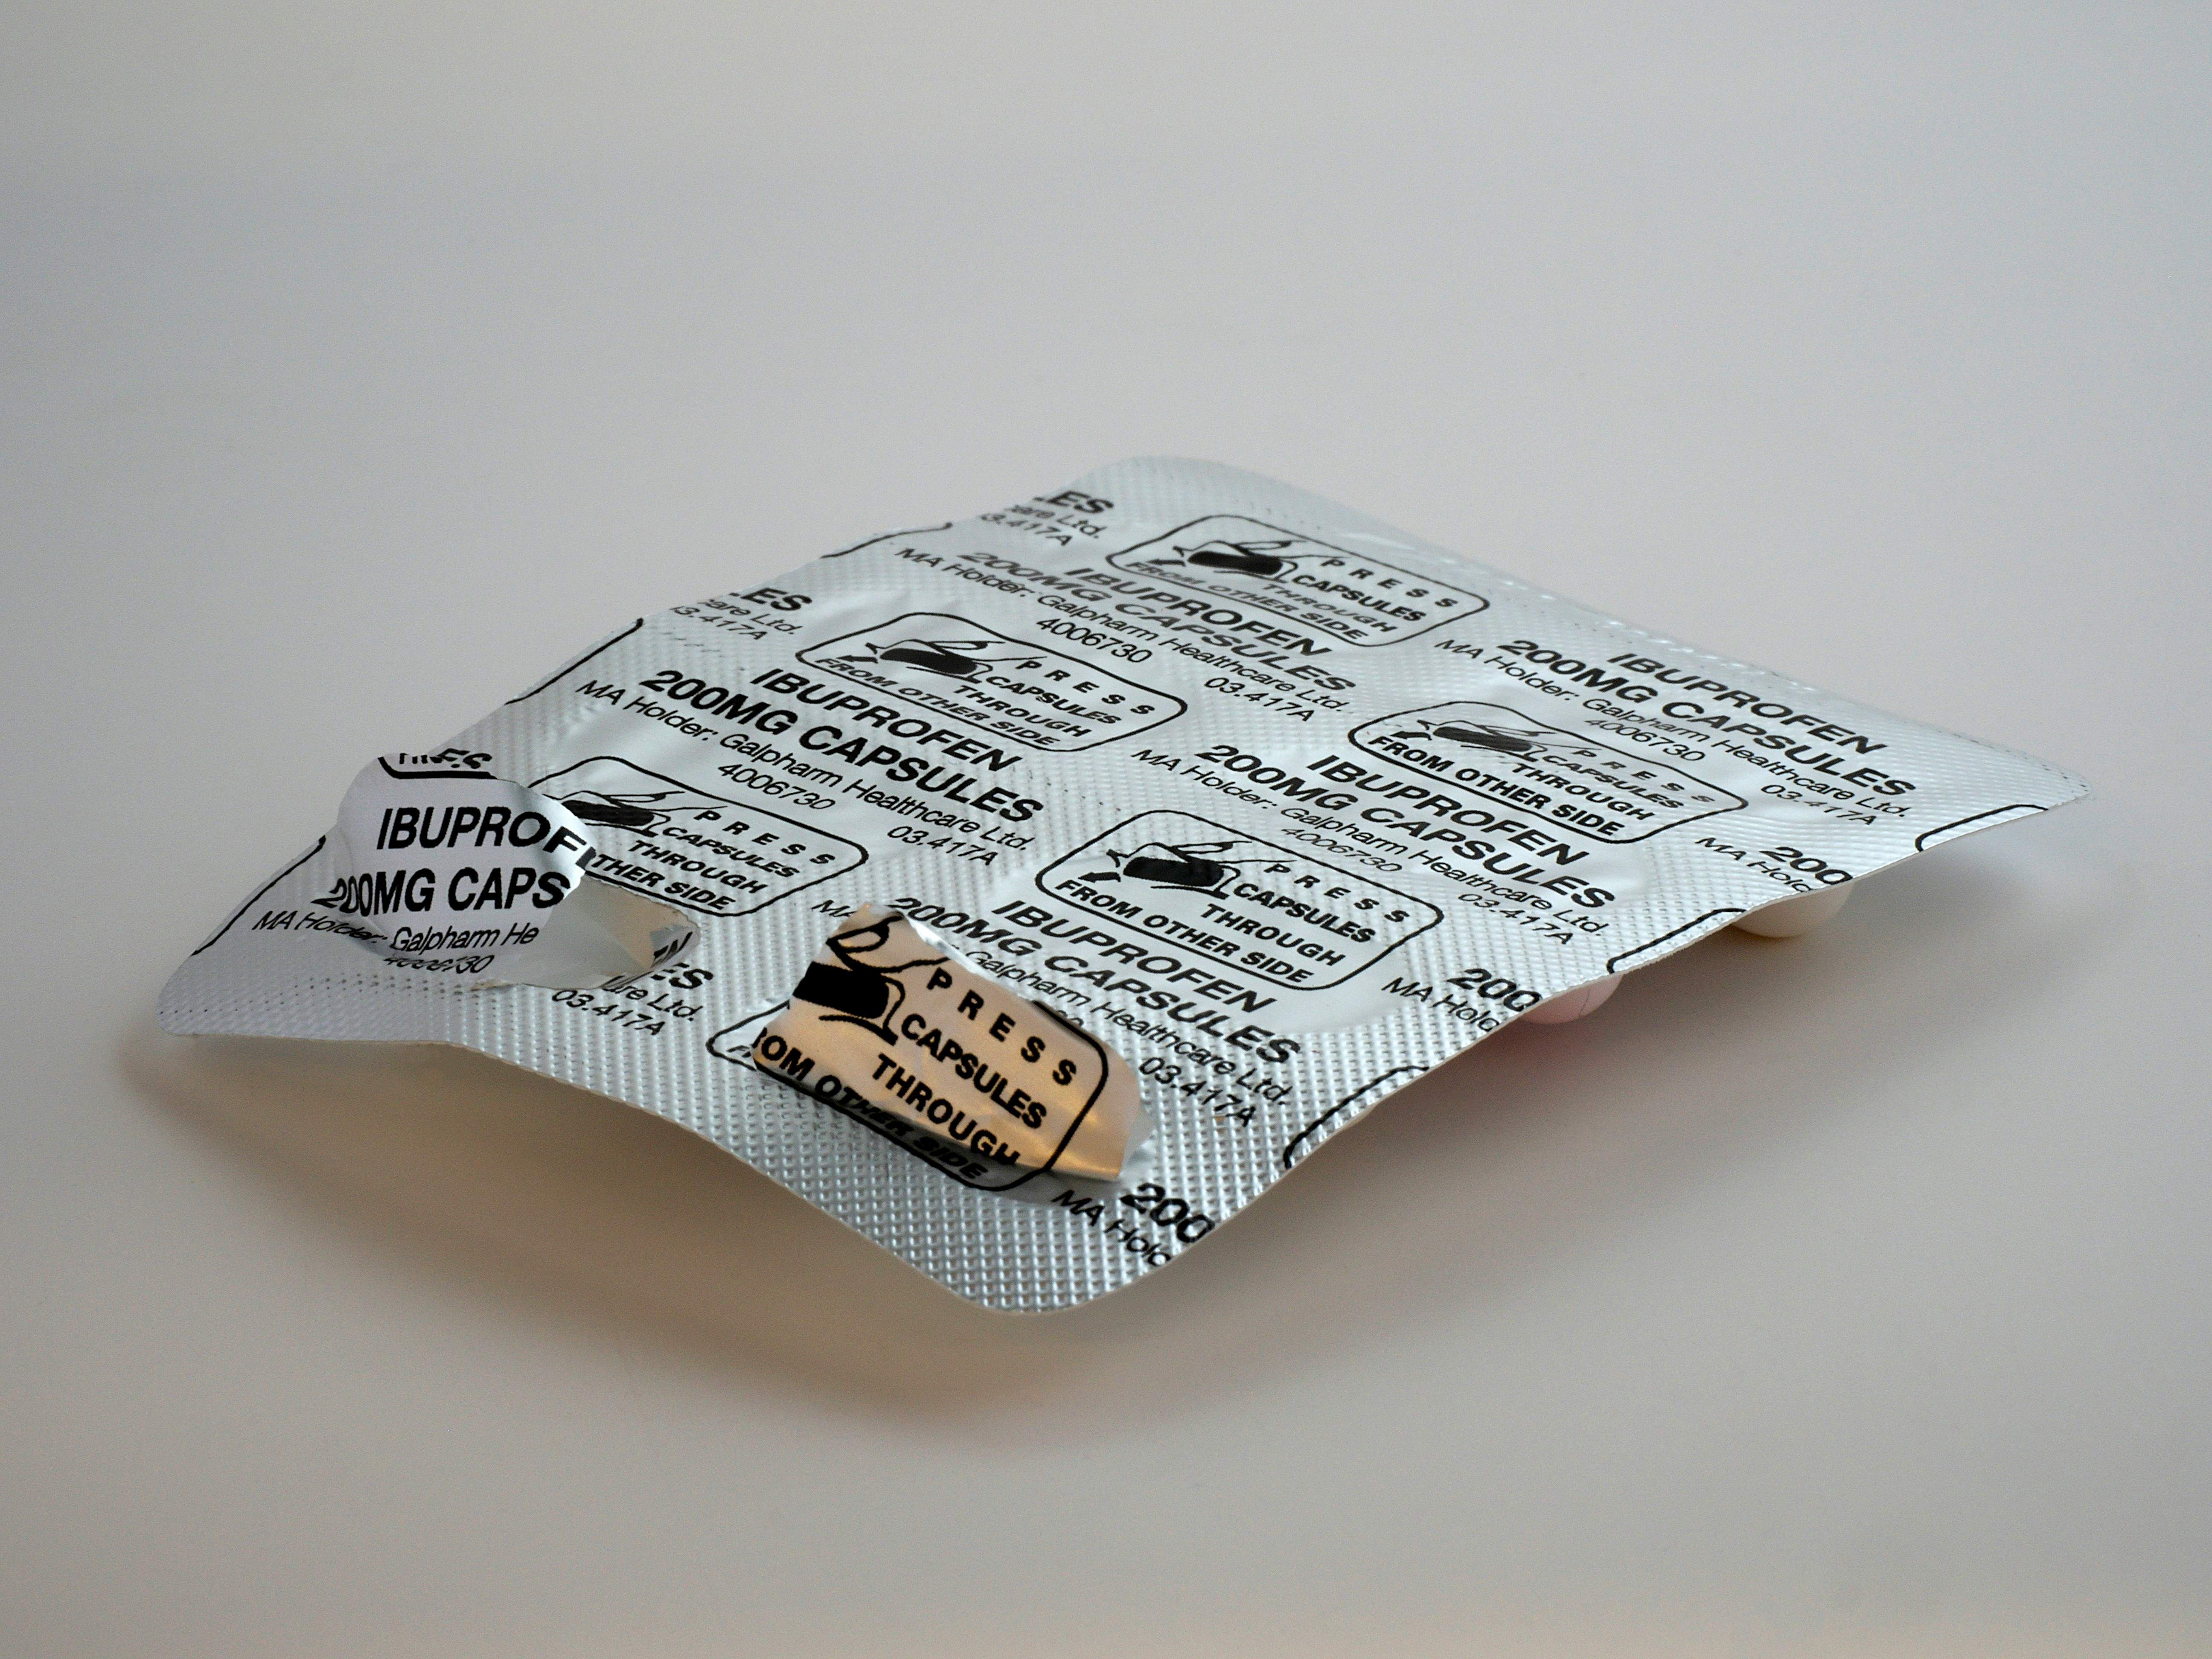 Els farmacèutics alerten dels riscos "preocupants" de barrejar alcohol amb ibuprofèn o paracetamol